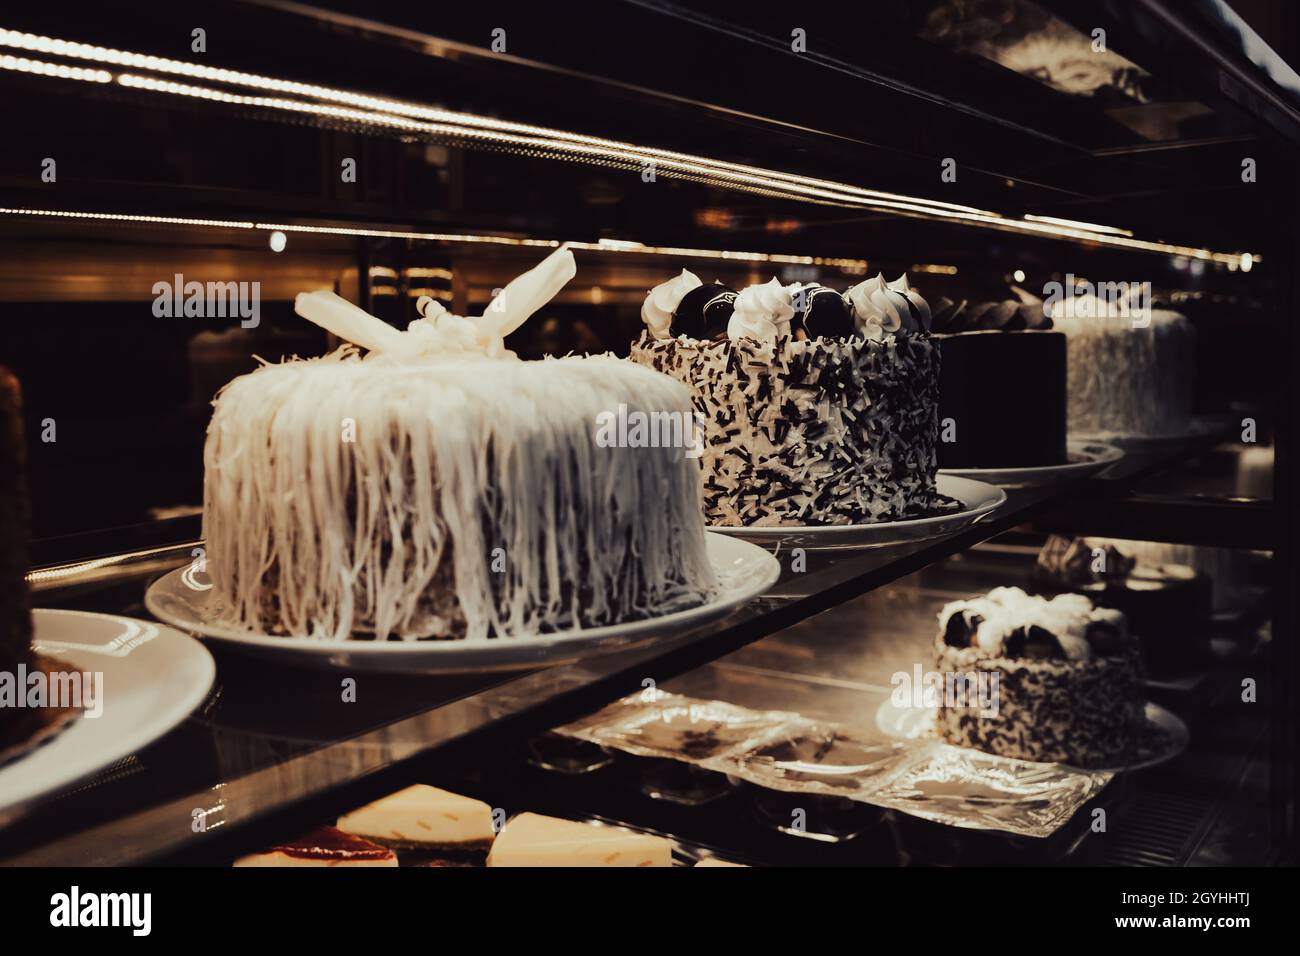 vista prospettica primo piano di file di torte di compleanno al cioccolato assortite allineate sullo scaffale nella finestra scura di un negozio di dolci Foto Stock